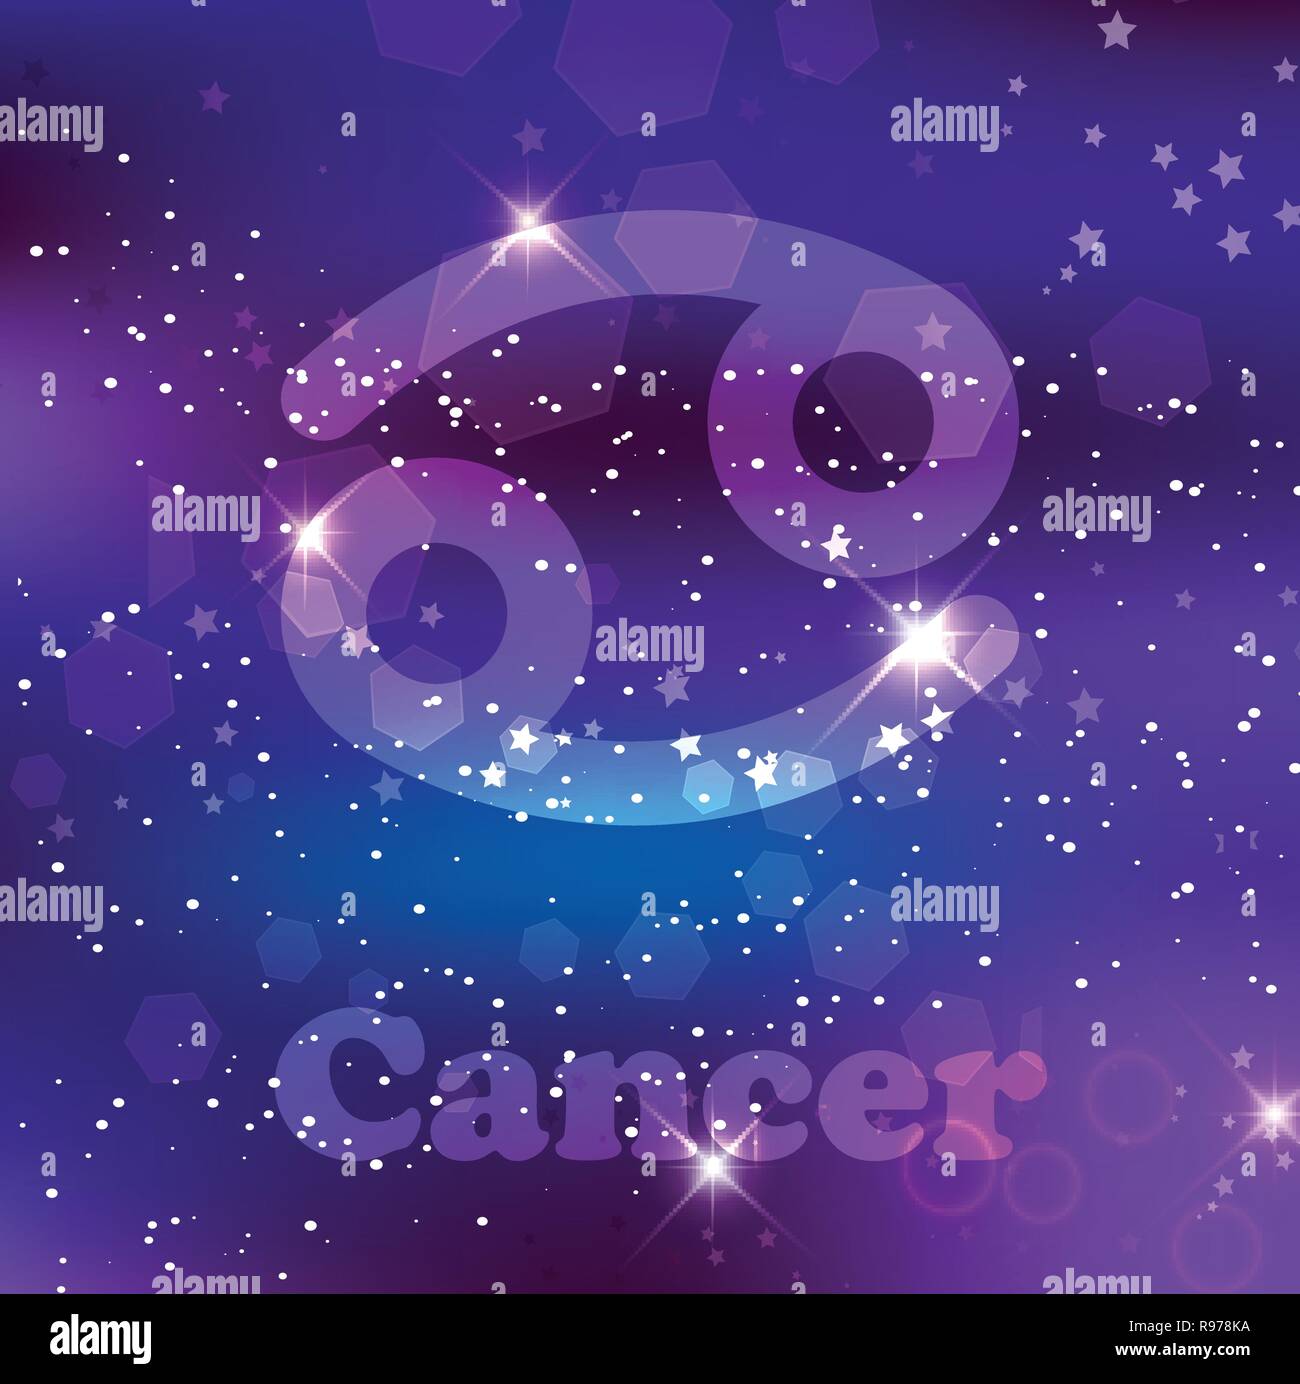 Il cancro segno zodiacale e costellazione sul cosmica sfondo viola con stelle luccicanti e nebulosa. Illustrazione Vettoriale, banner, poster, scheda di granchio. Spac Illustrazione Vettoriale